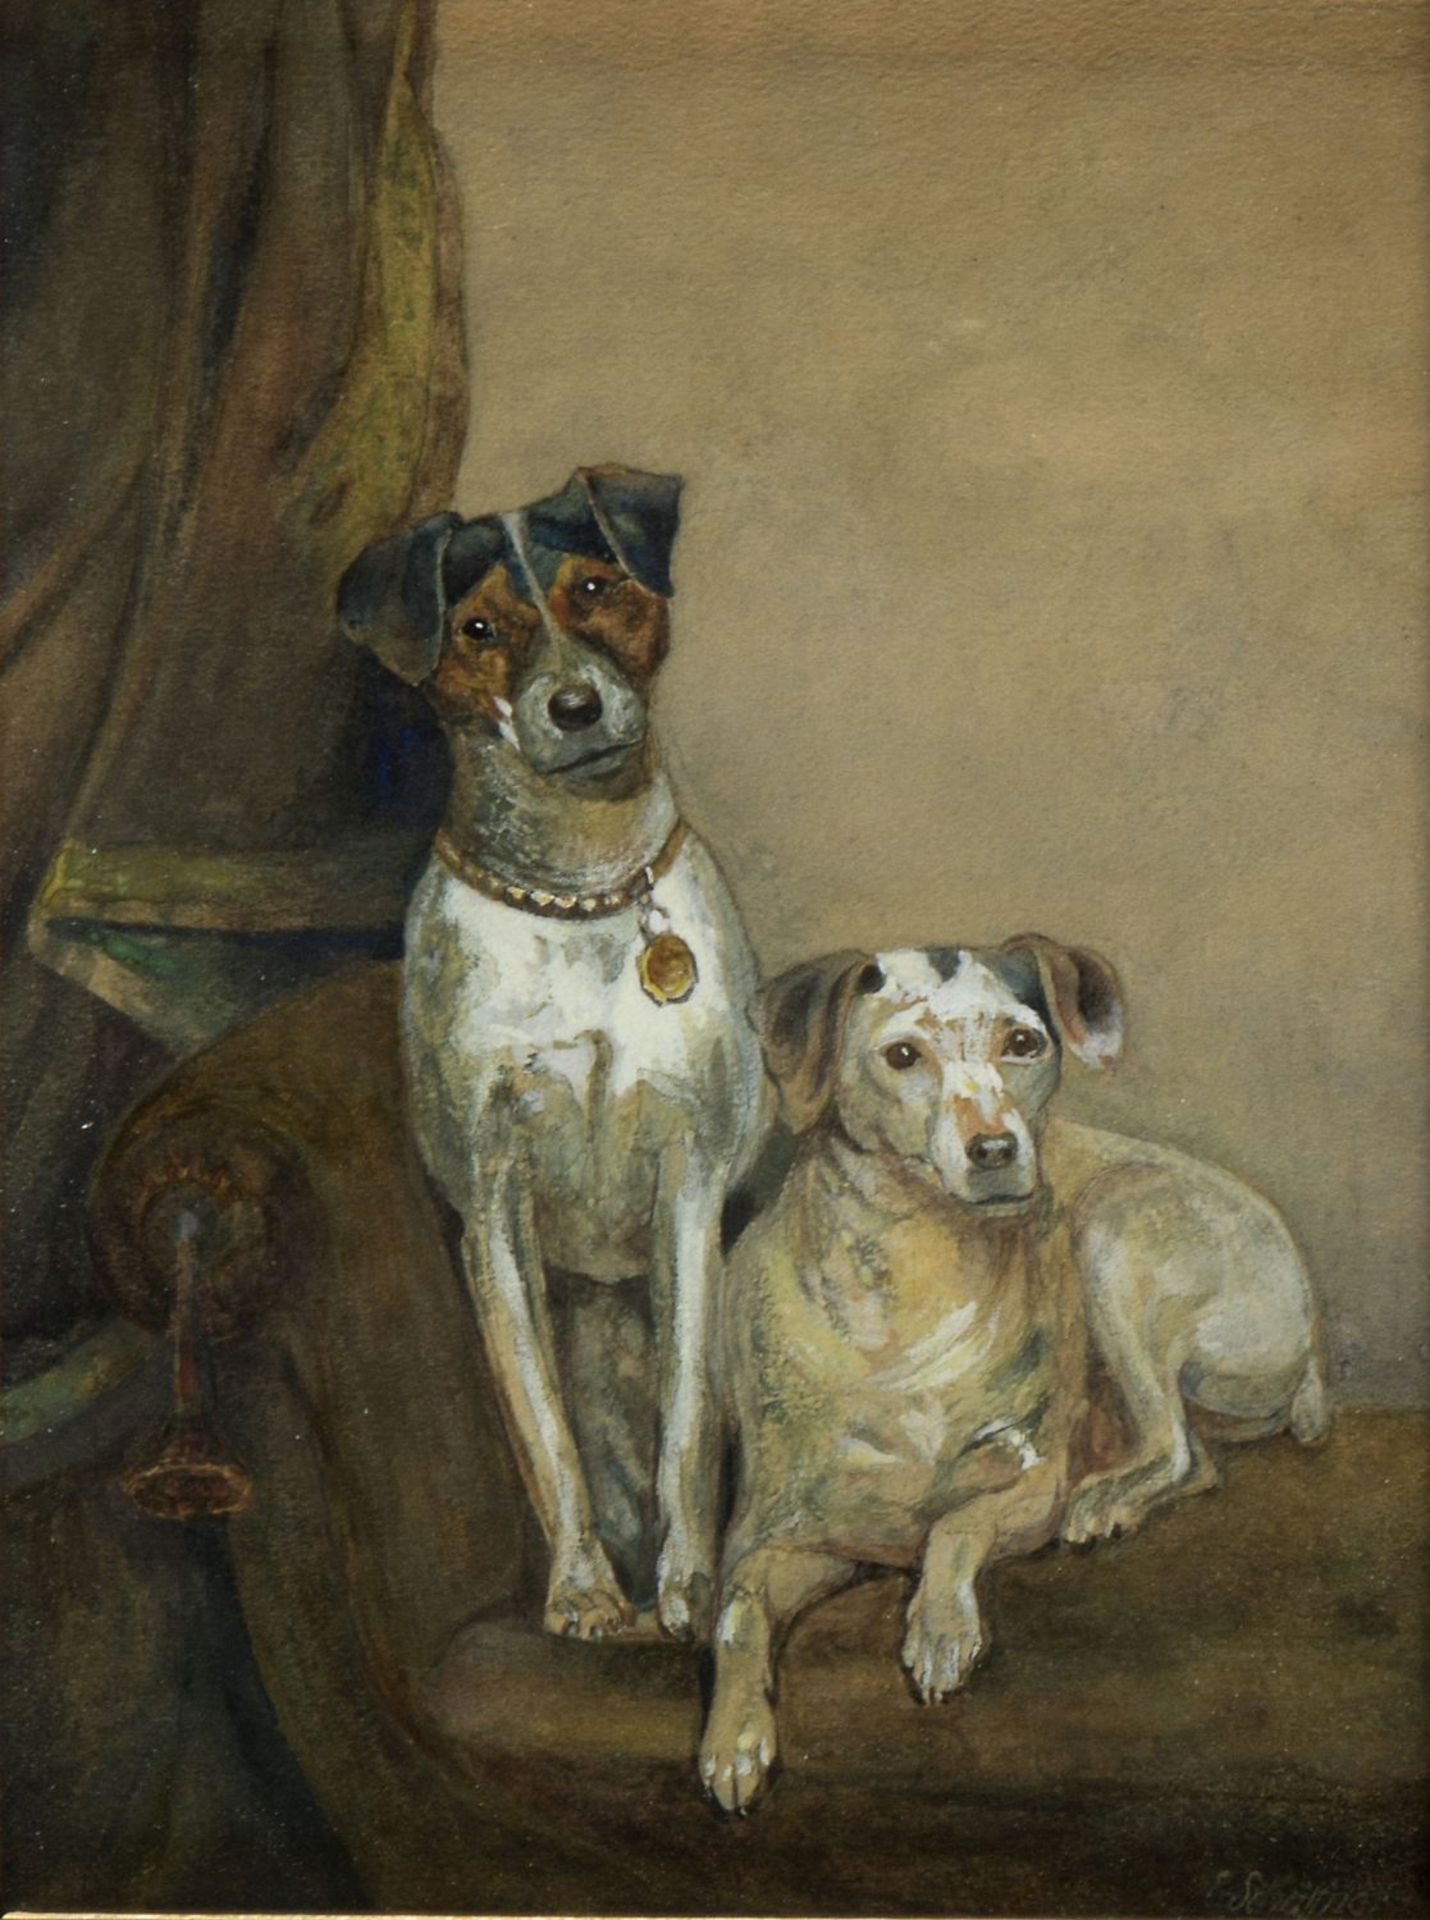 Schäffner, E.Zwei Parson Russell Terrier auf einem Sofa. Aquarell über Bleistift, weiß gehöht. Sign.